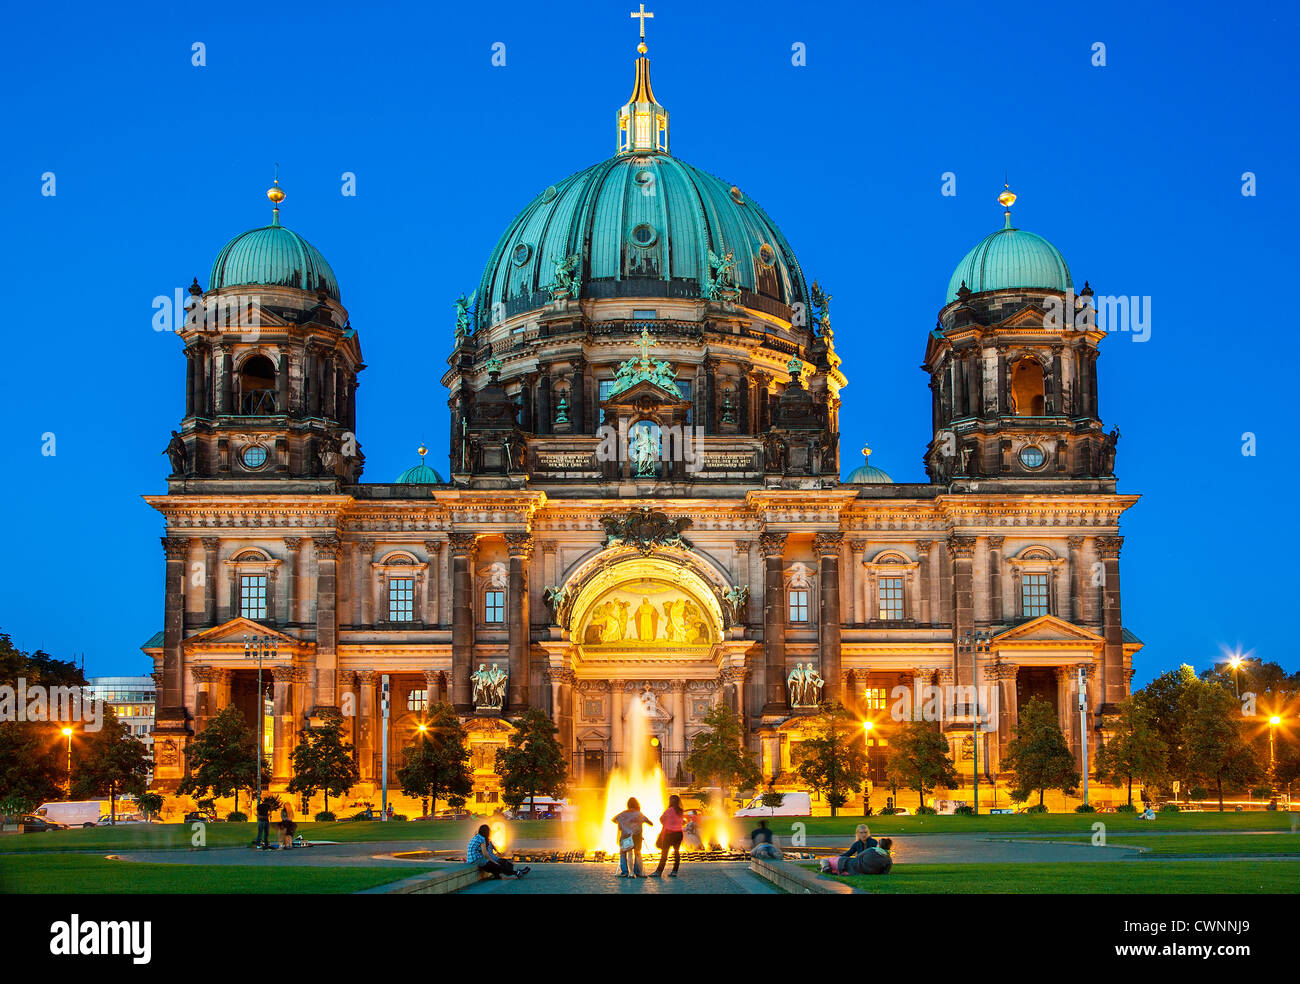 L'Europe, Allemagne, Berlin, la cathédrale de Berlin au crépuscule Banque D'Images